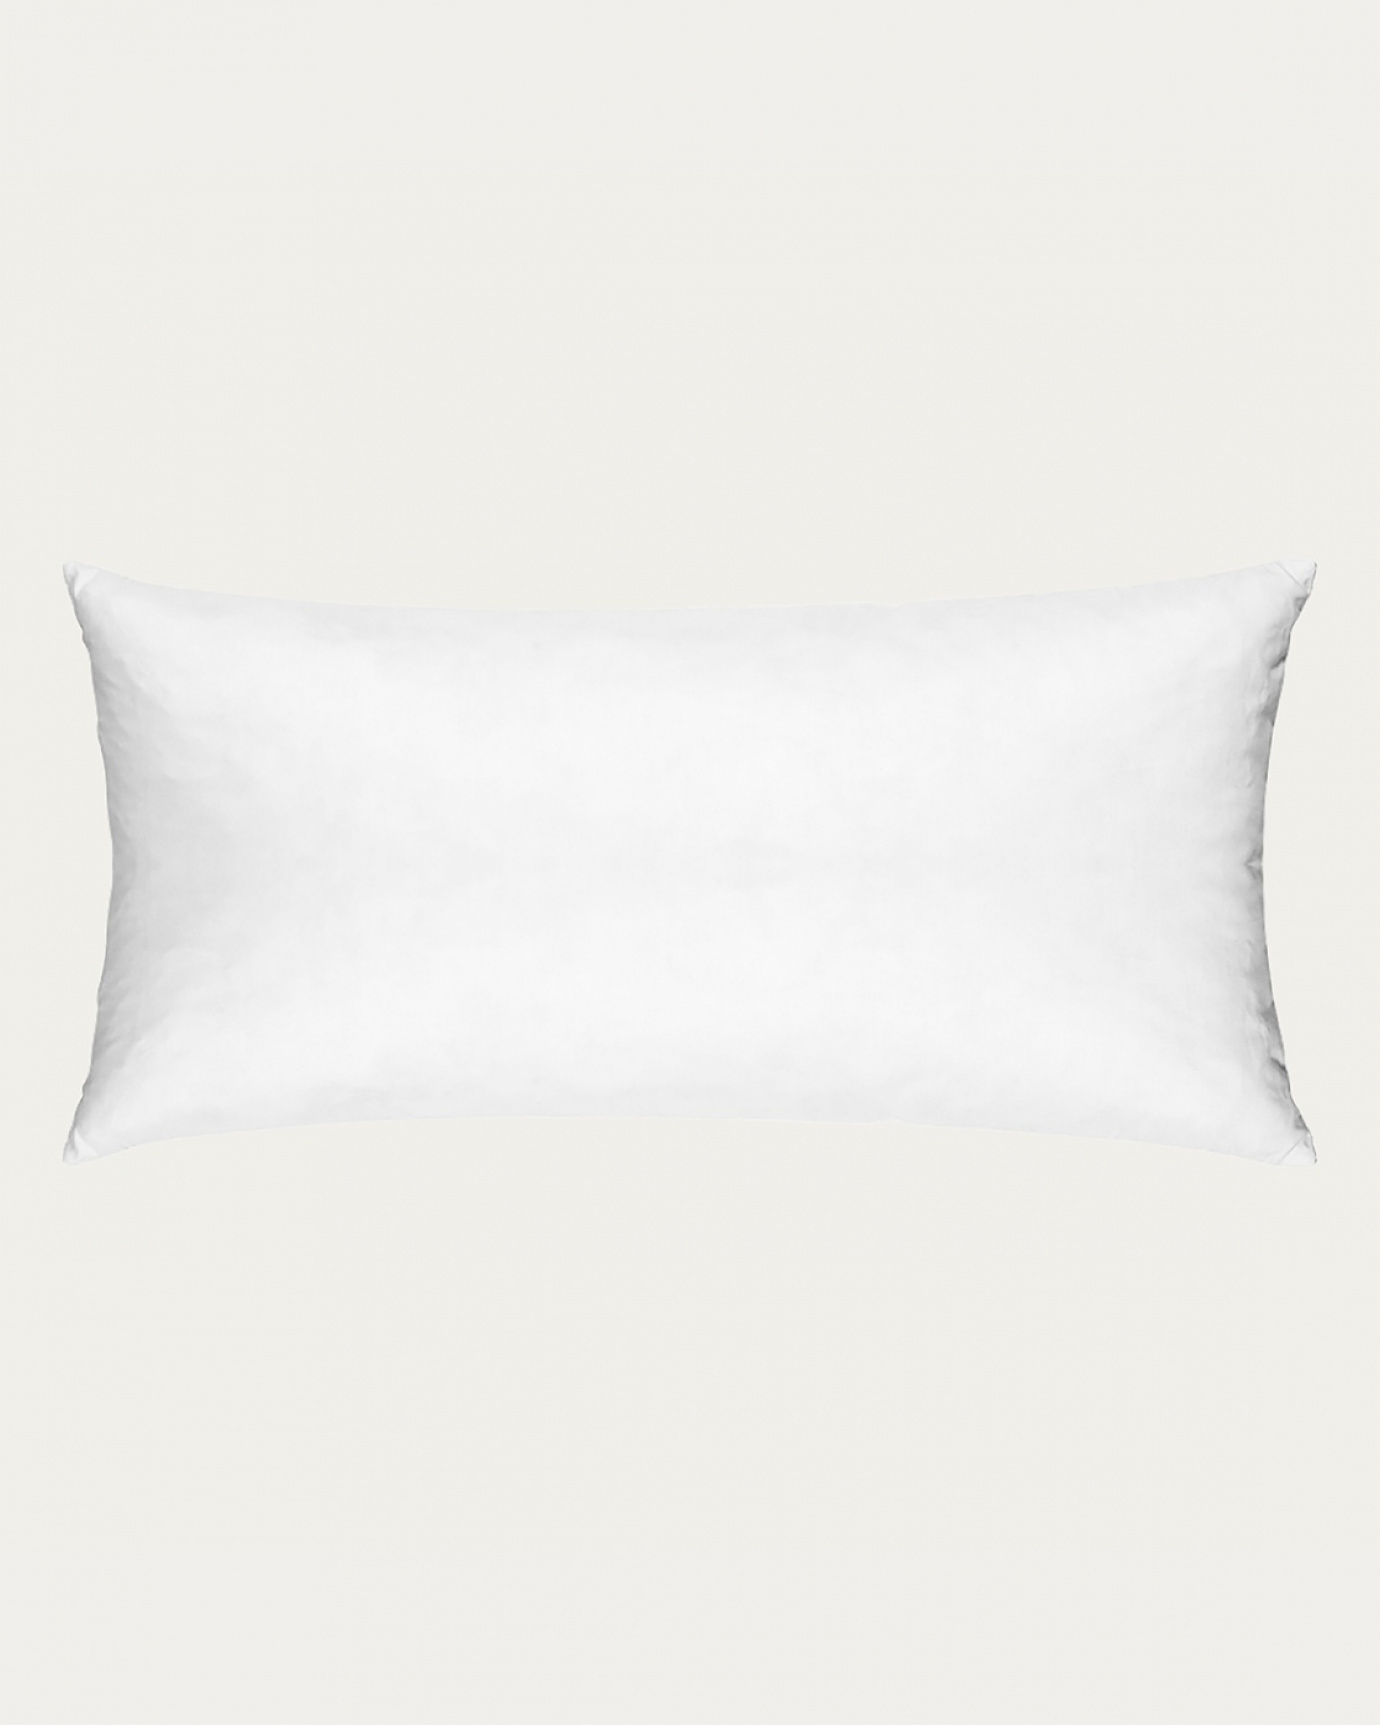 Immagine prodotto bianco SYNTHETIC cuscini interni in cotone con imbottitura in poliestere di LINUM DESIGN. Dimensioni 35x70 cm.